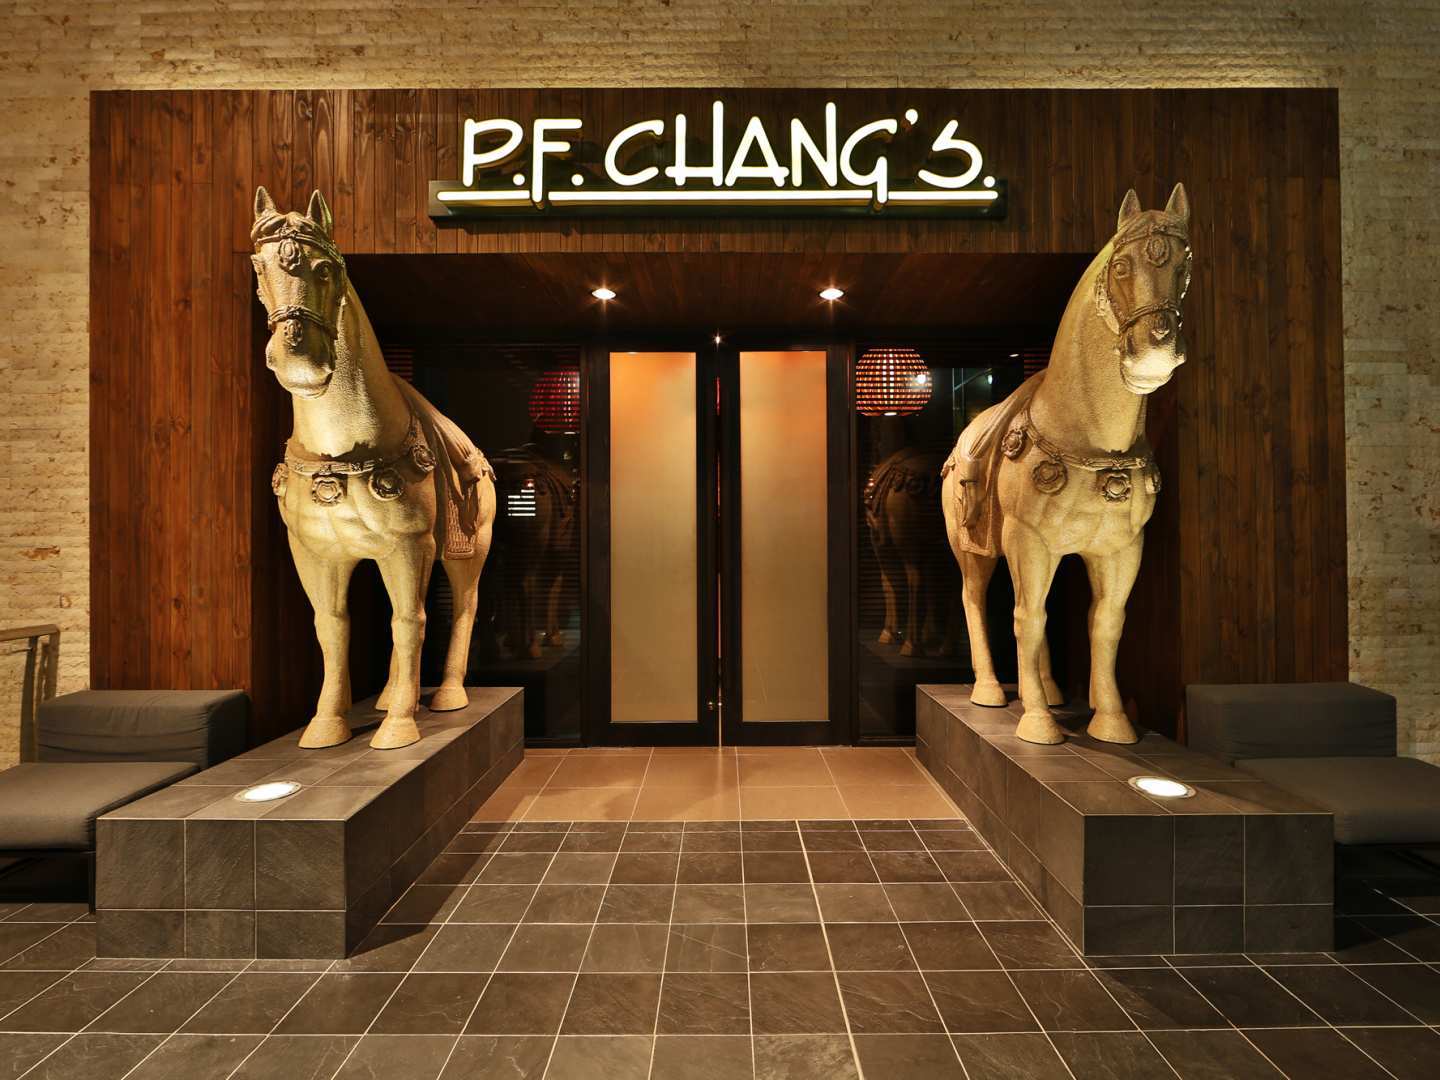 P.F. Chang's.